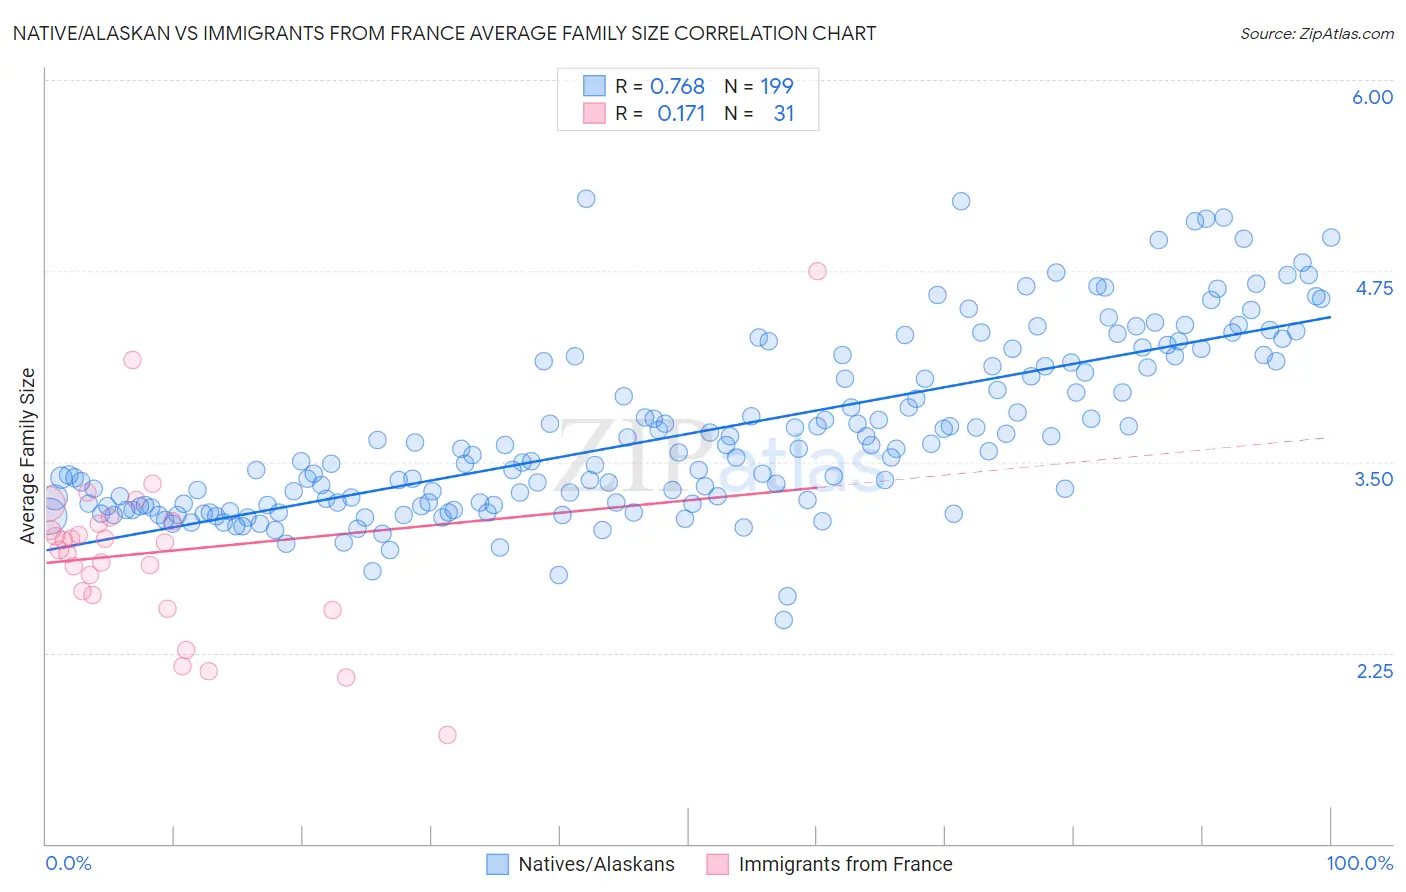 Native/Alaskan vs Immigrants from France Average Family Size